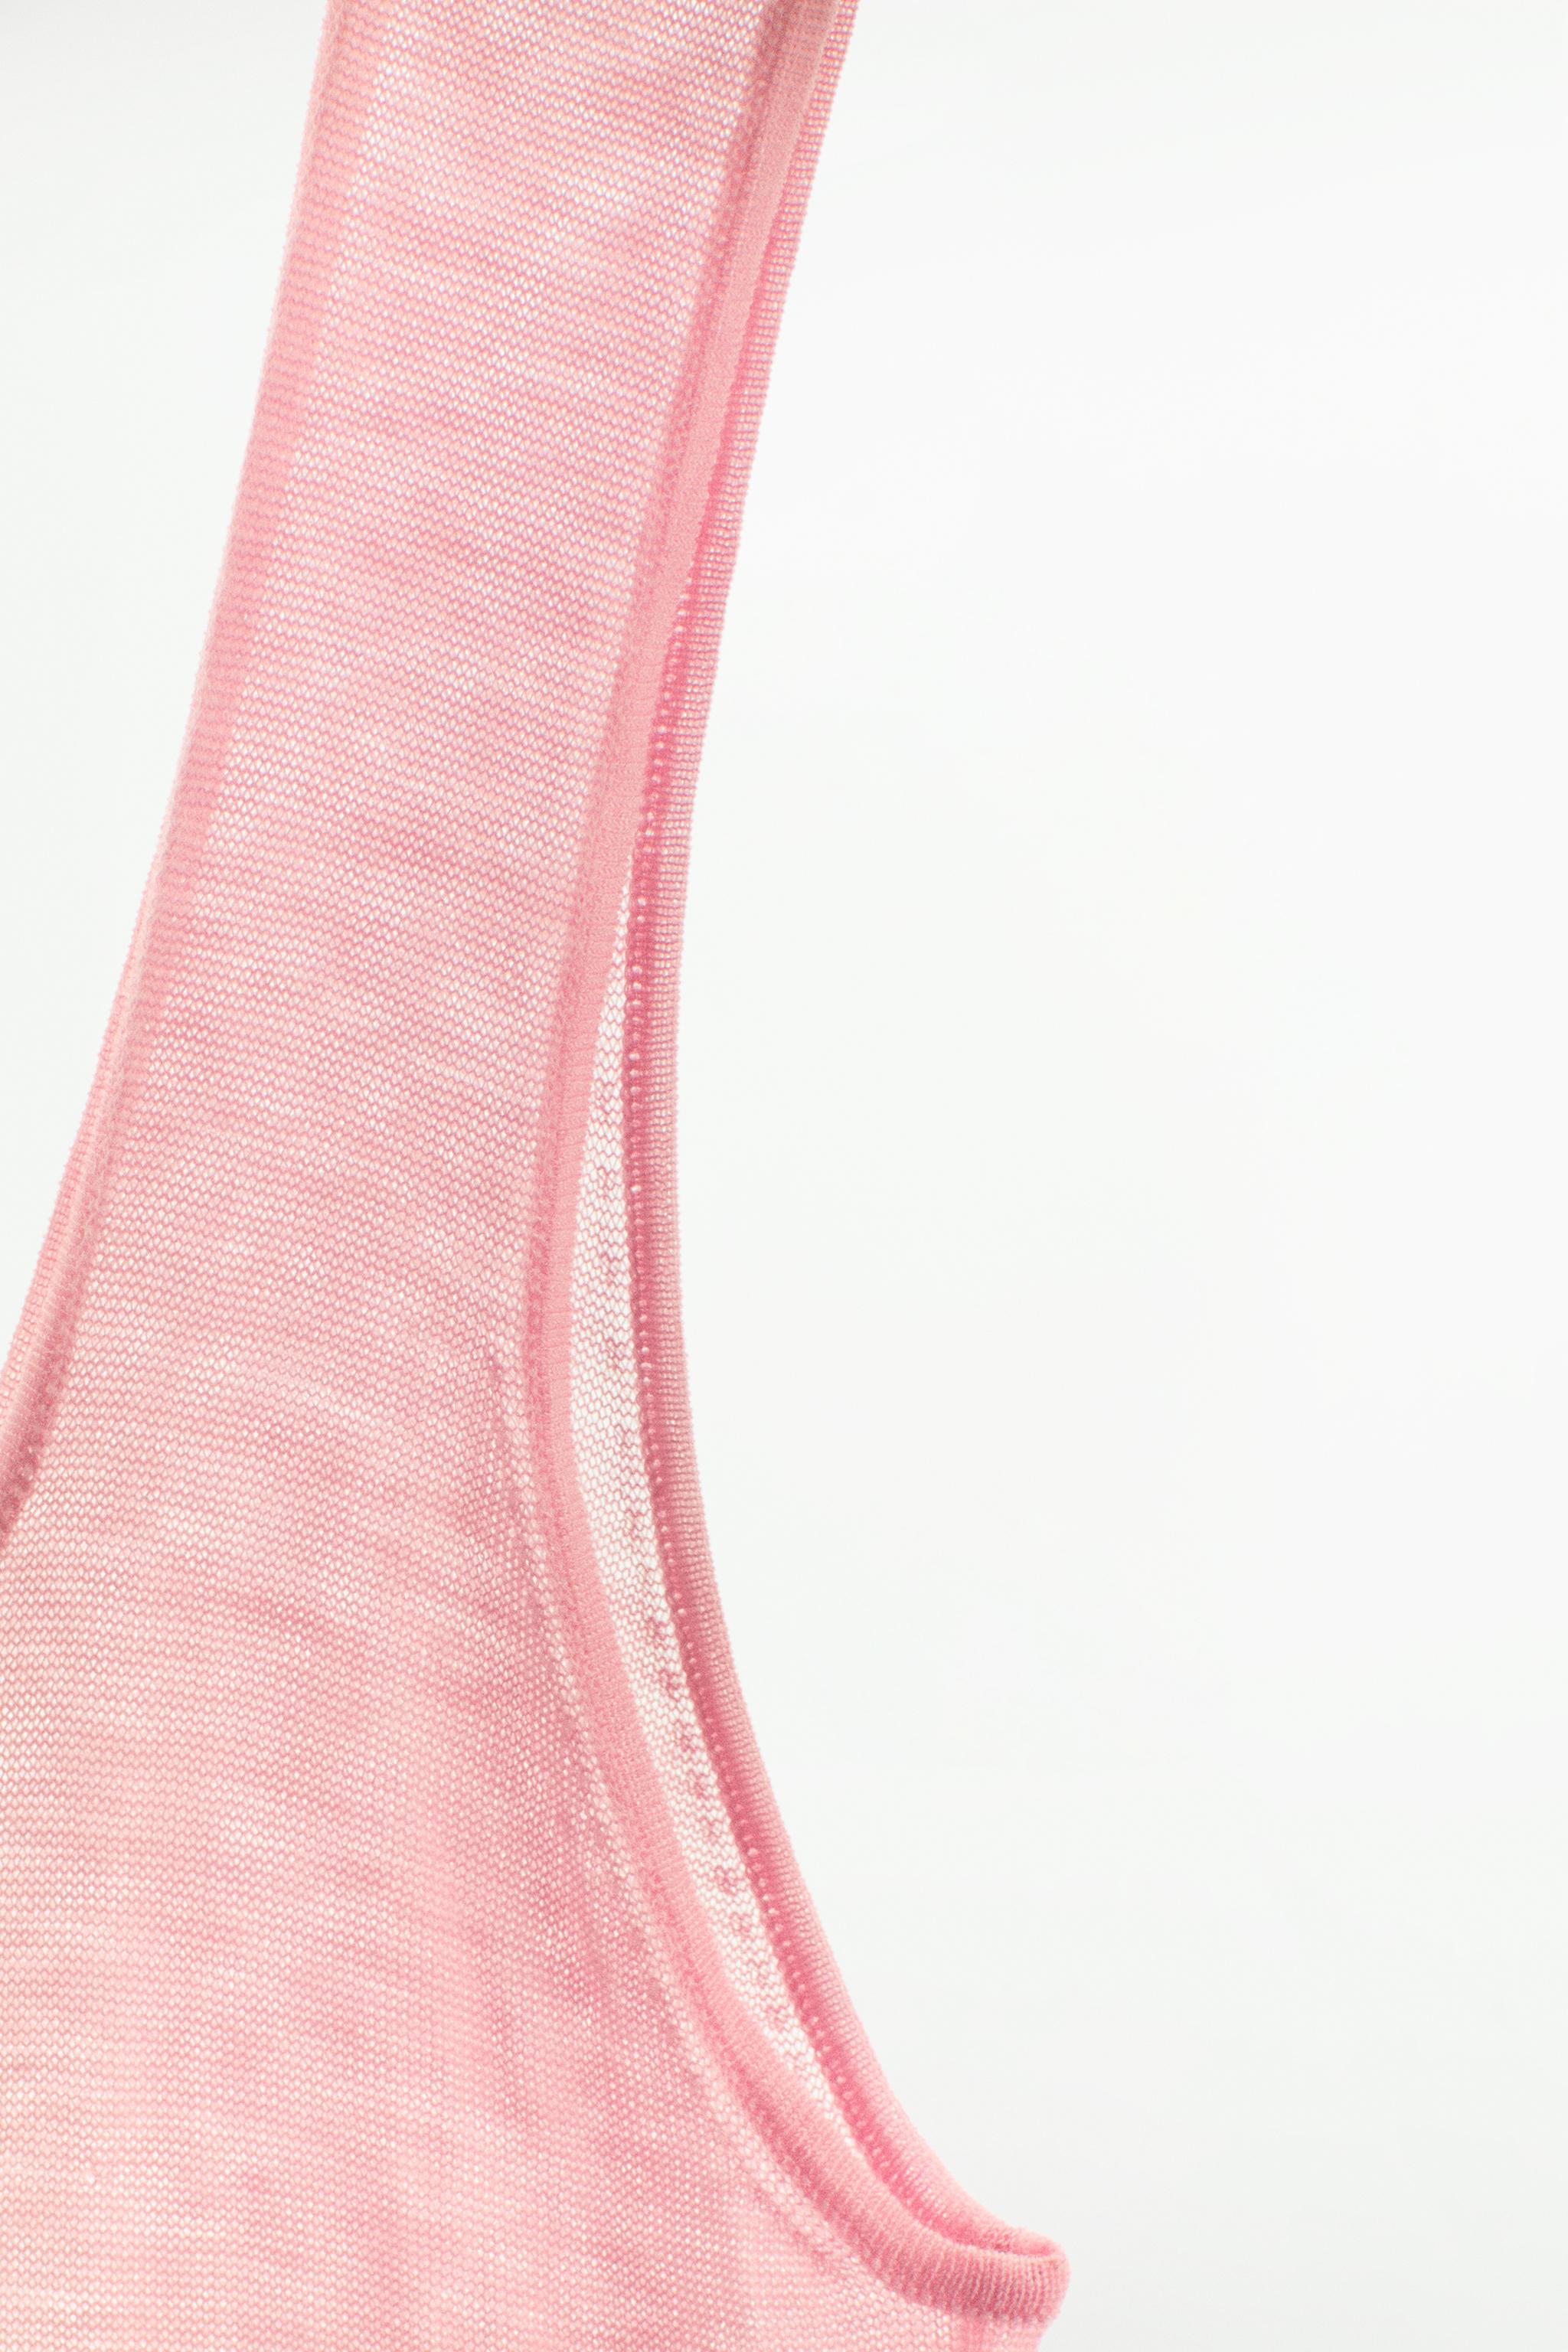 ZARA Suede Bralette / Crop Top Pink Size L - $21 (27% Off Retail